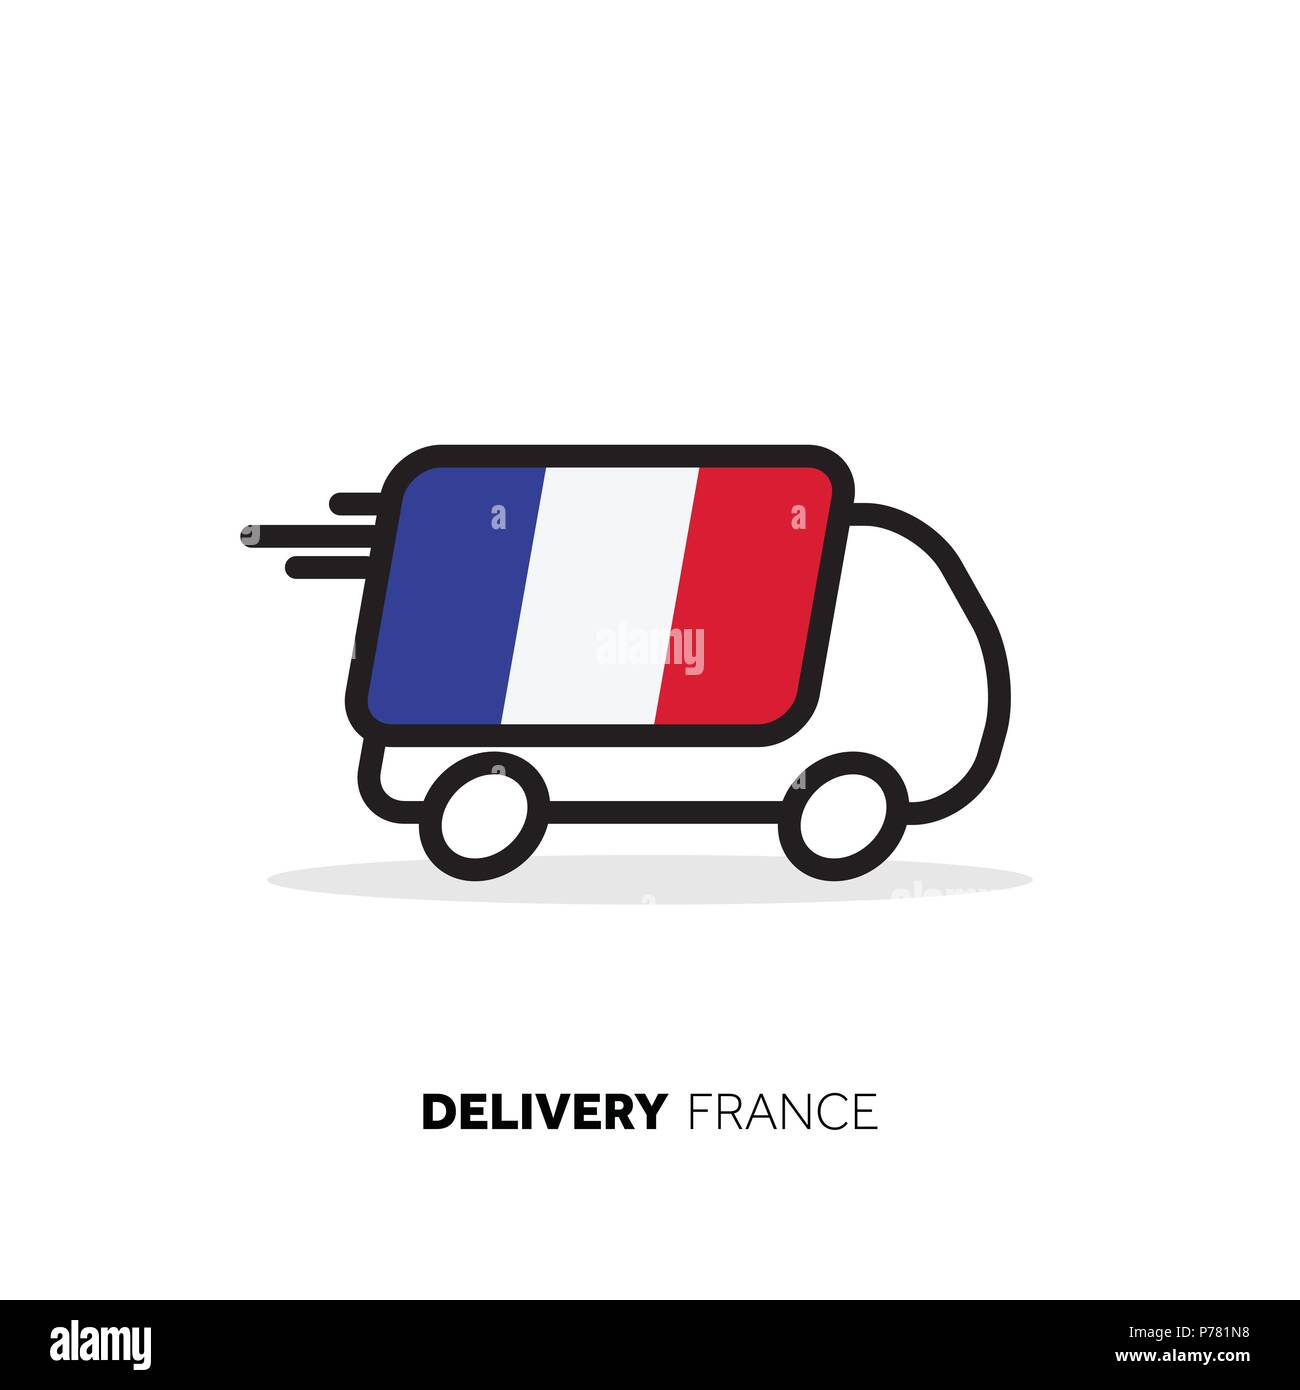 France van de livraison. Concept logistique Pays Illustration de Vecteur